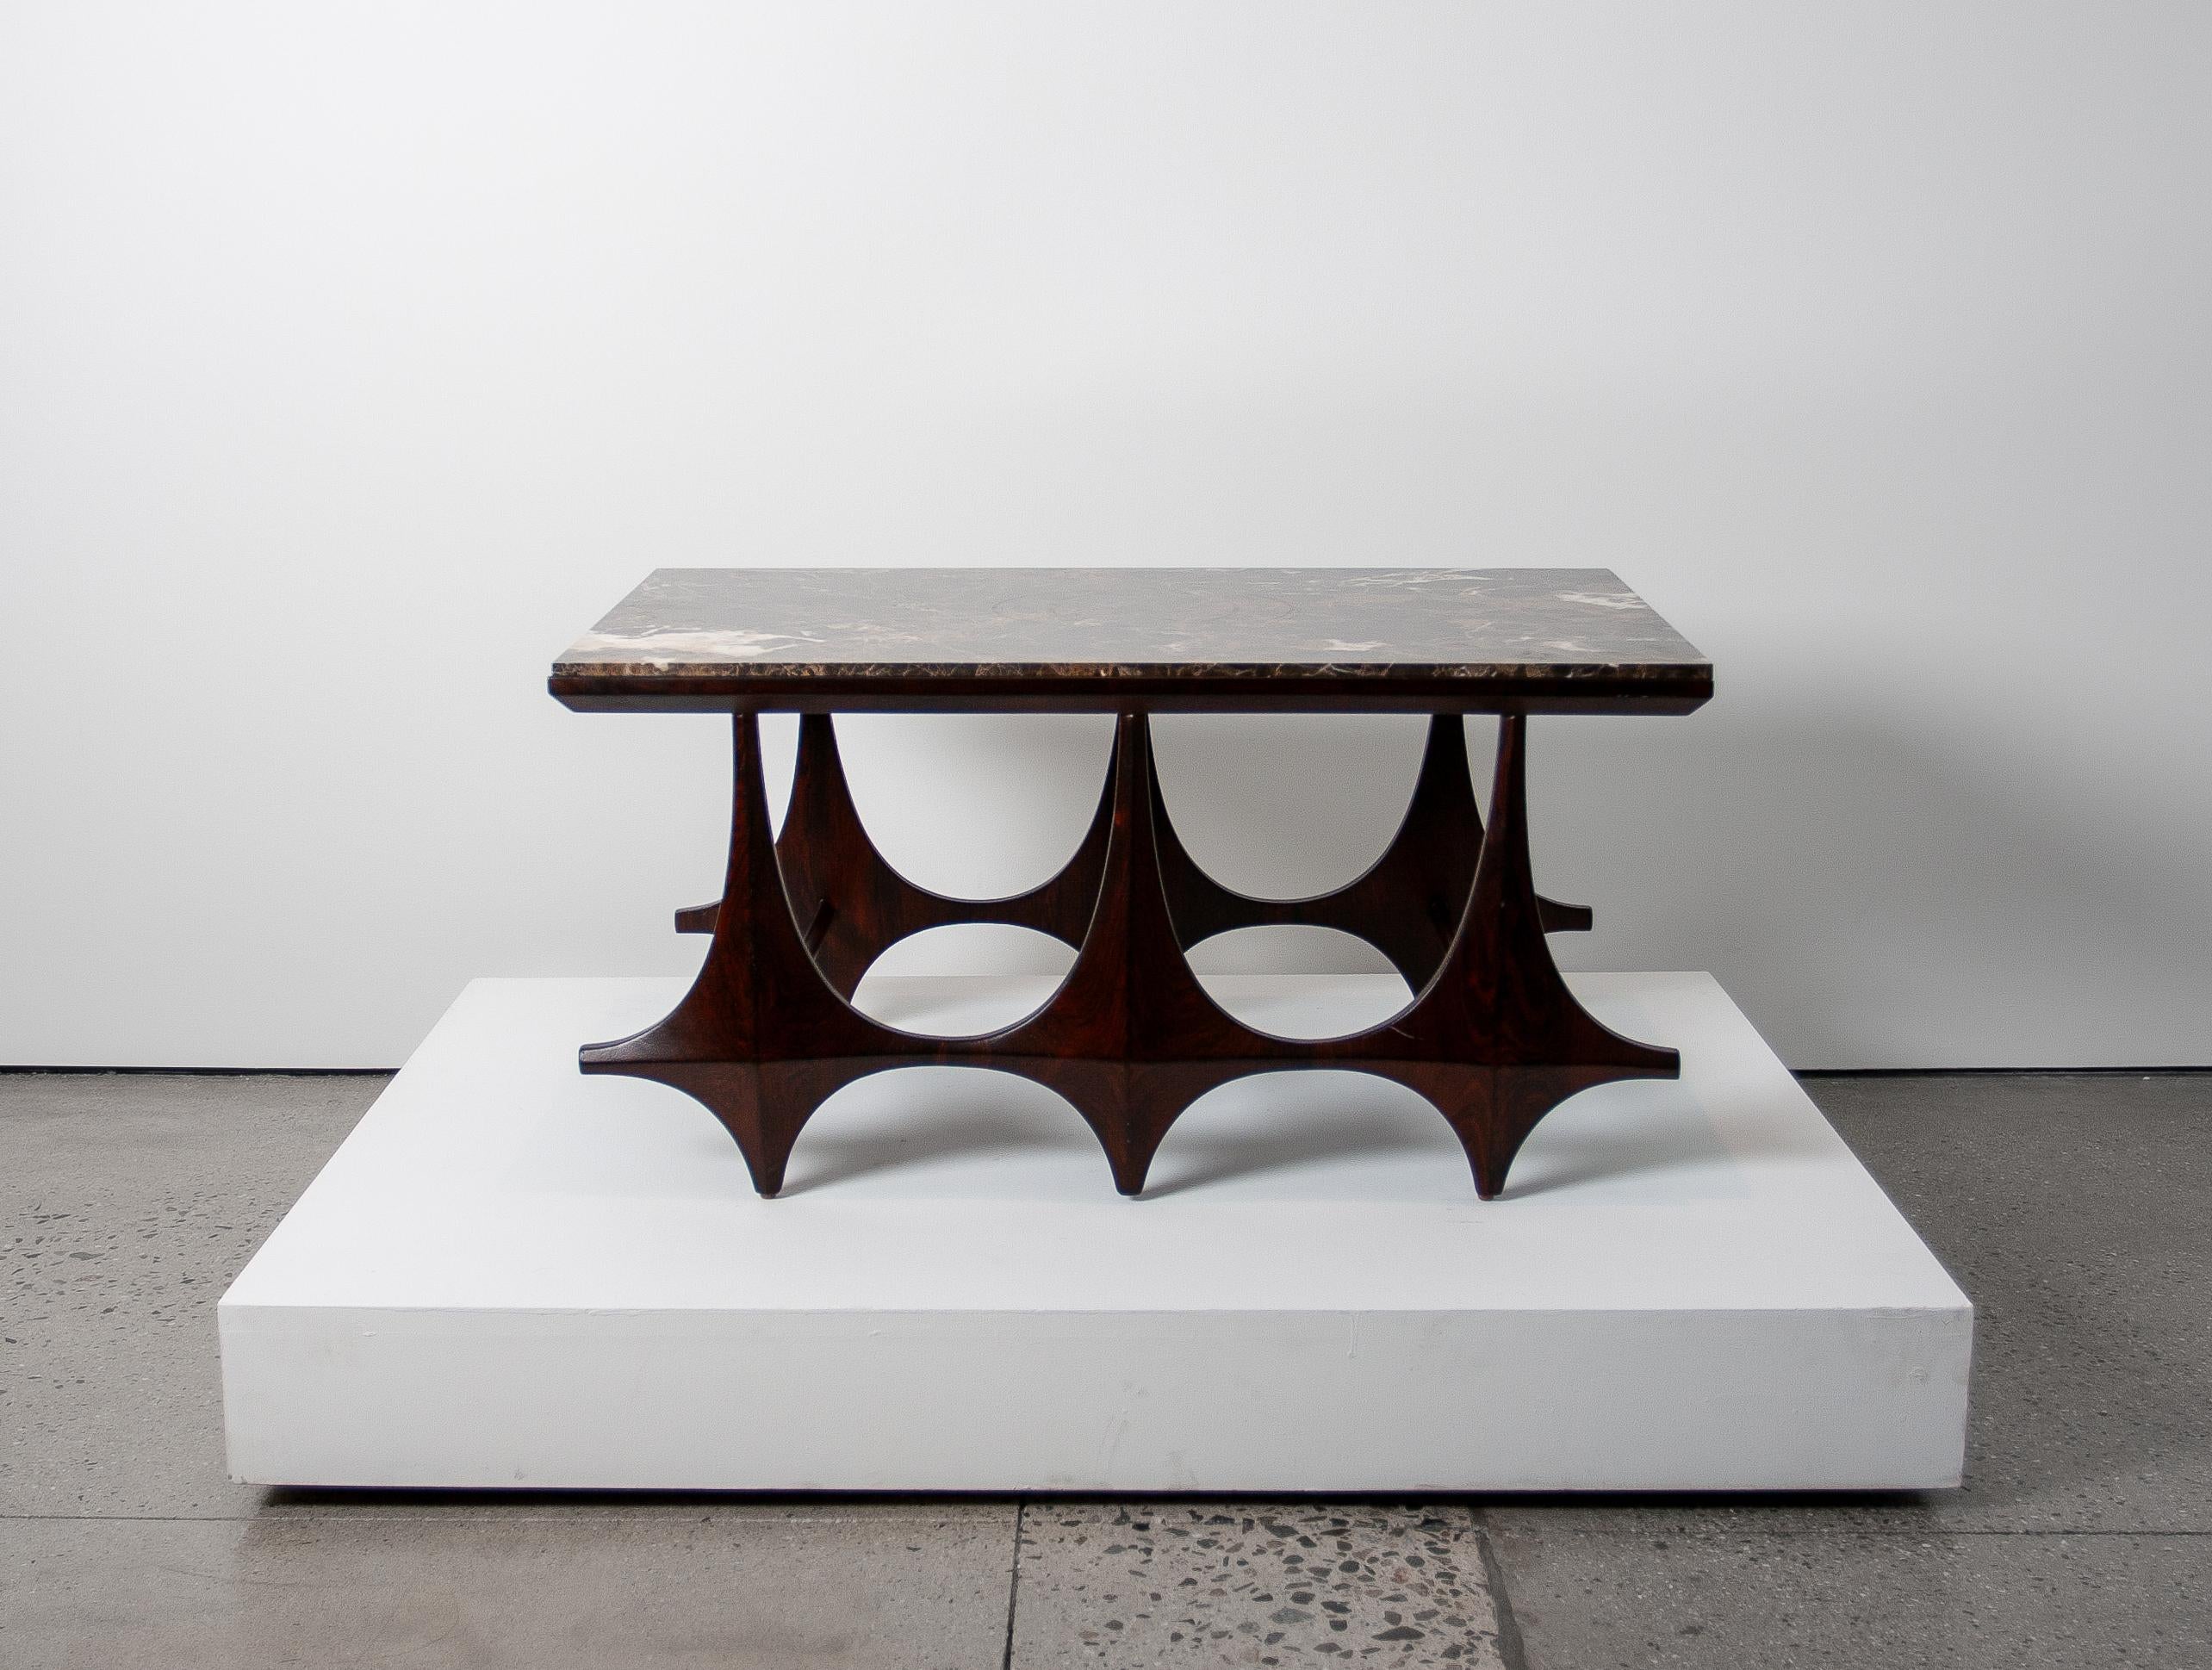 Il s'agit d'une table basse unique en son genre, avec un palissandre brésilien restauré et un nouveau plateau en marbre brun. 
Fabriquée à partir de marbre italien de haute qualité, cette table dégage un charme luxueux avec des tons riches et des